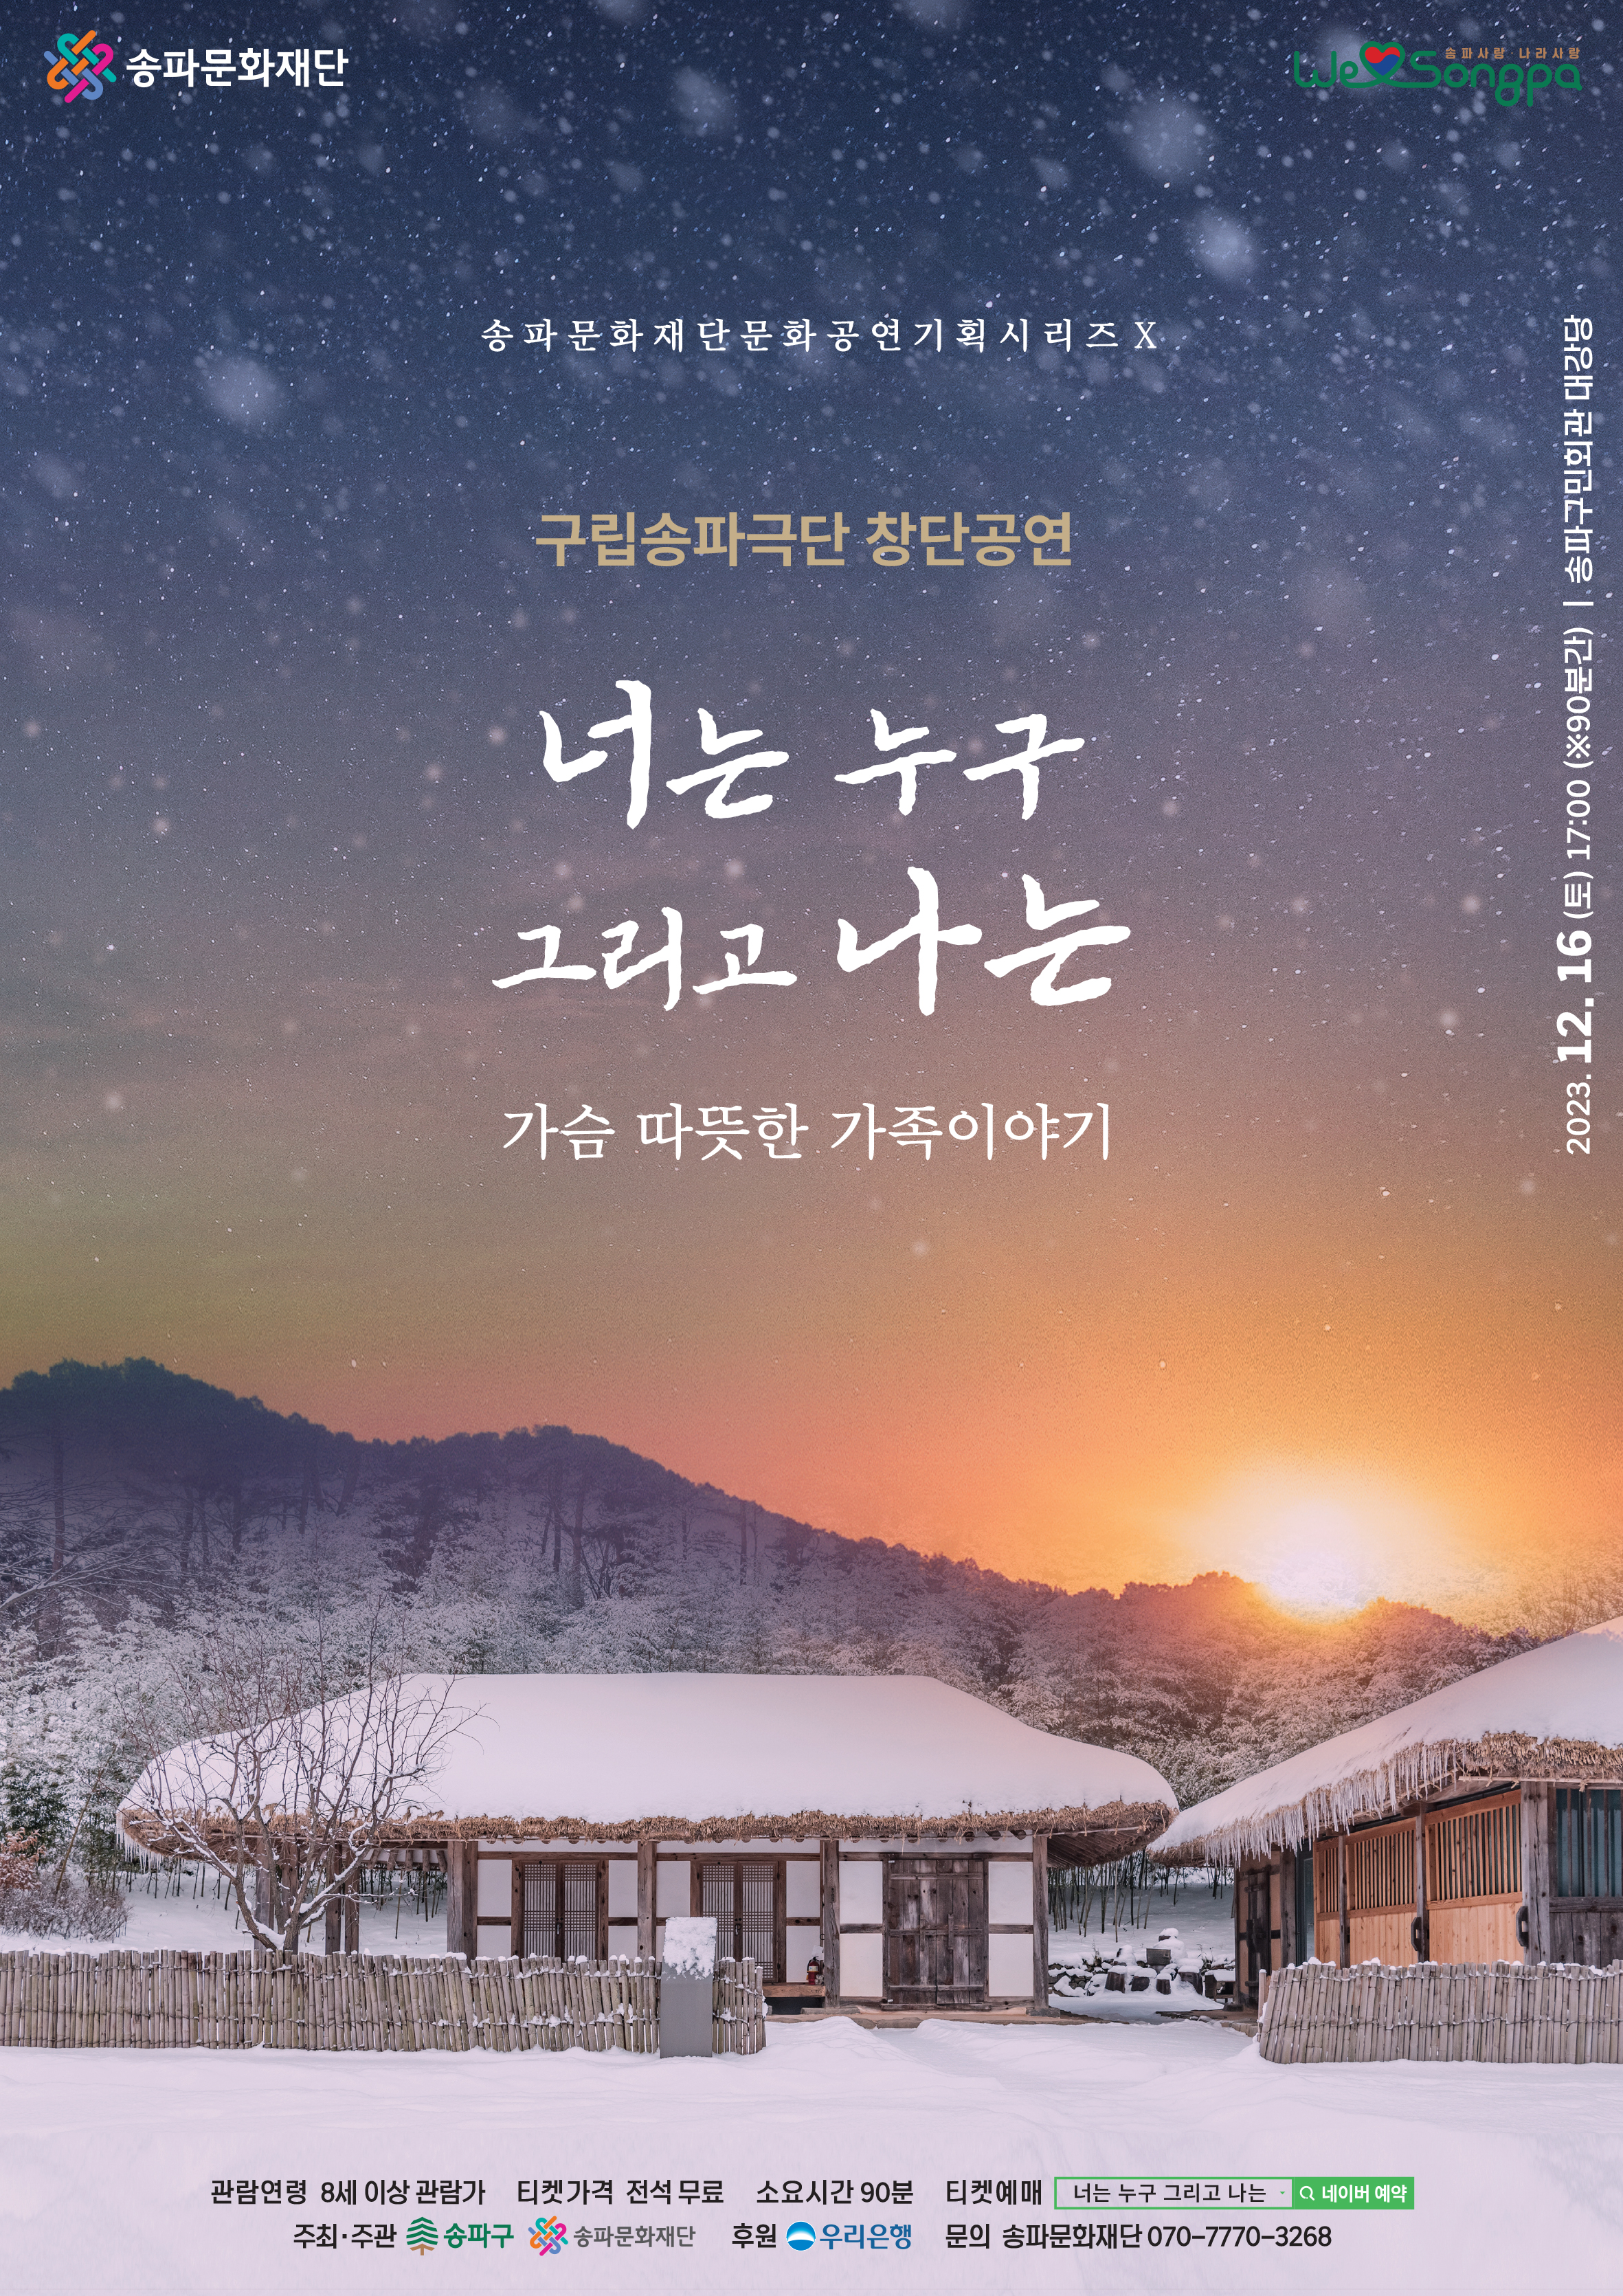 [공연] '구립 송파극단 창단공연' 12.16.(토)